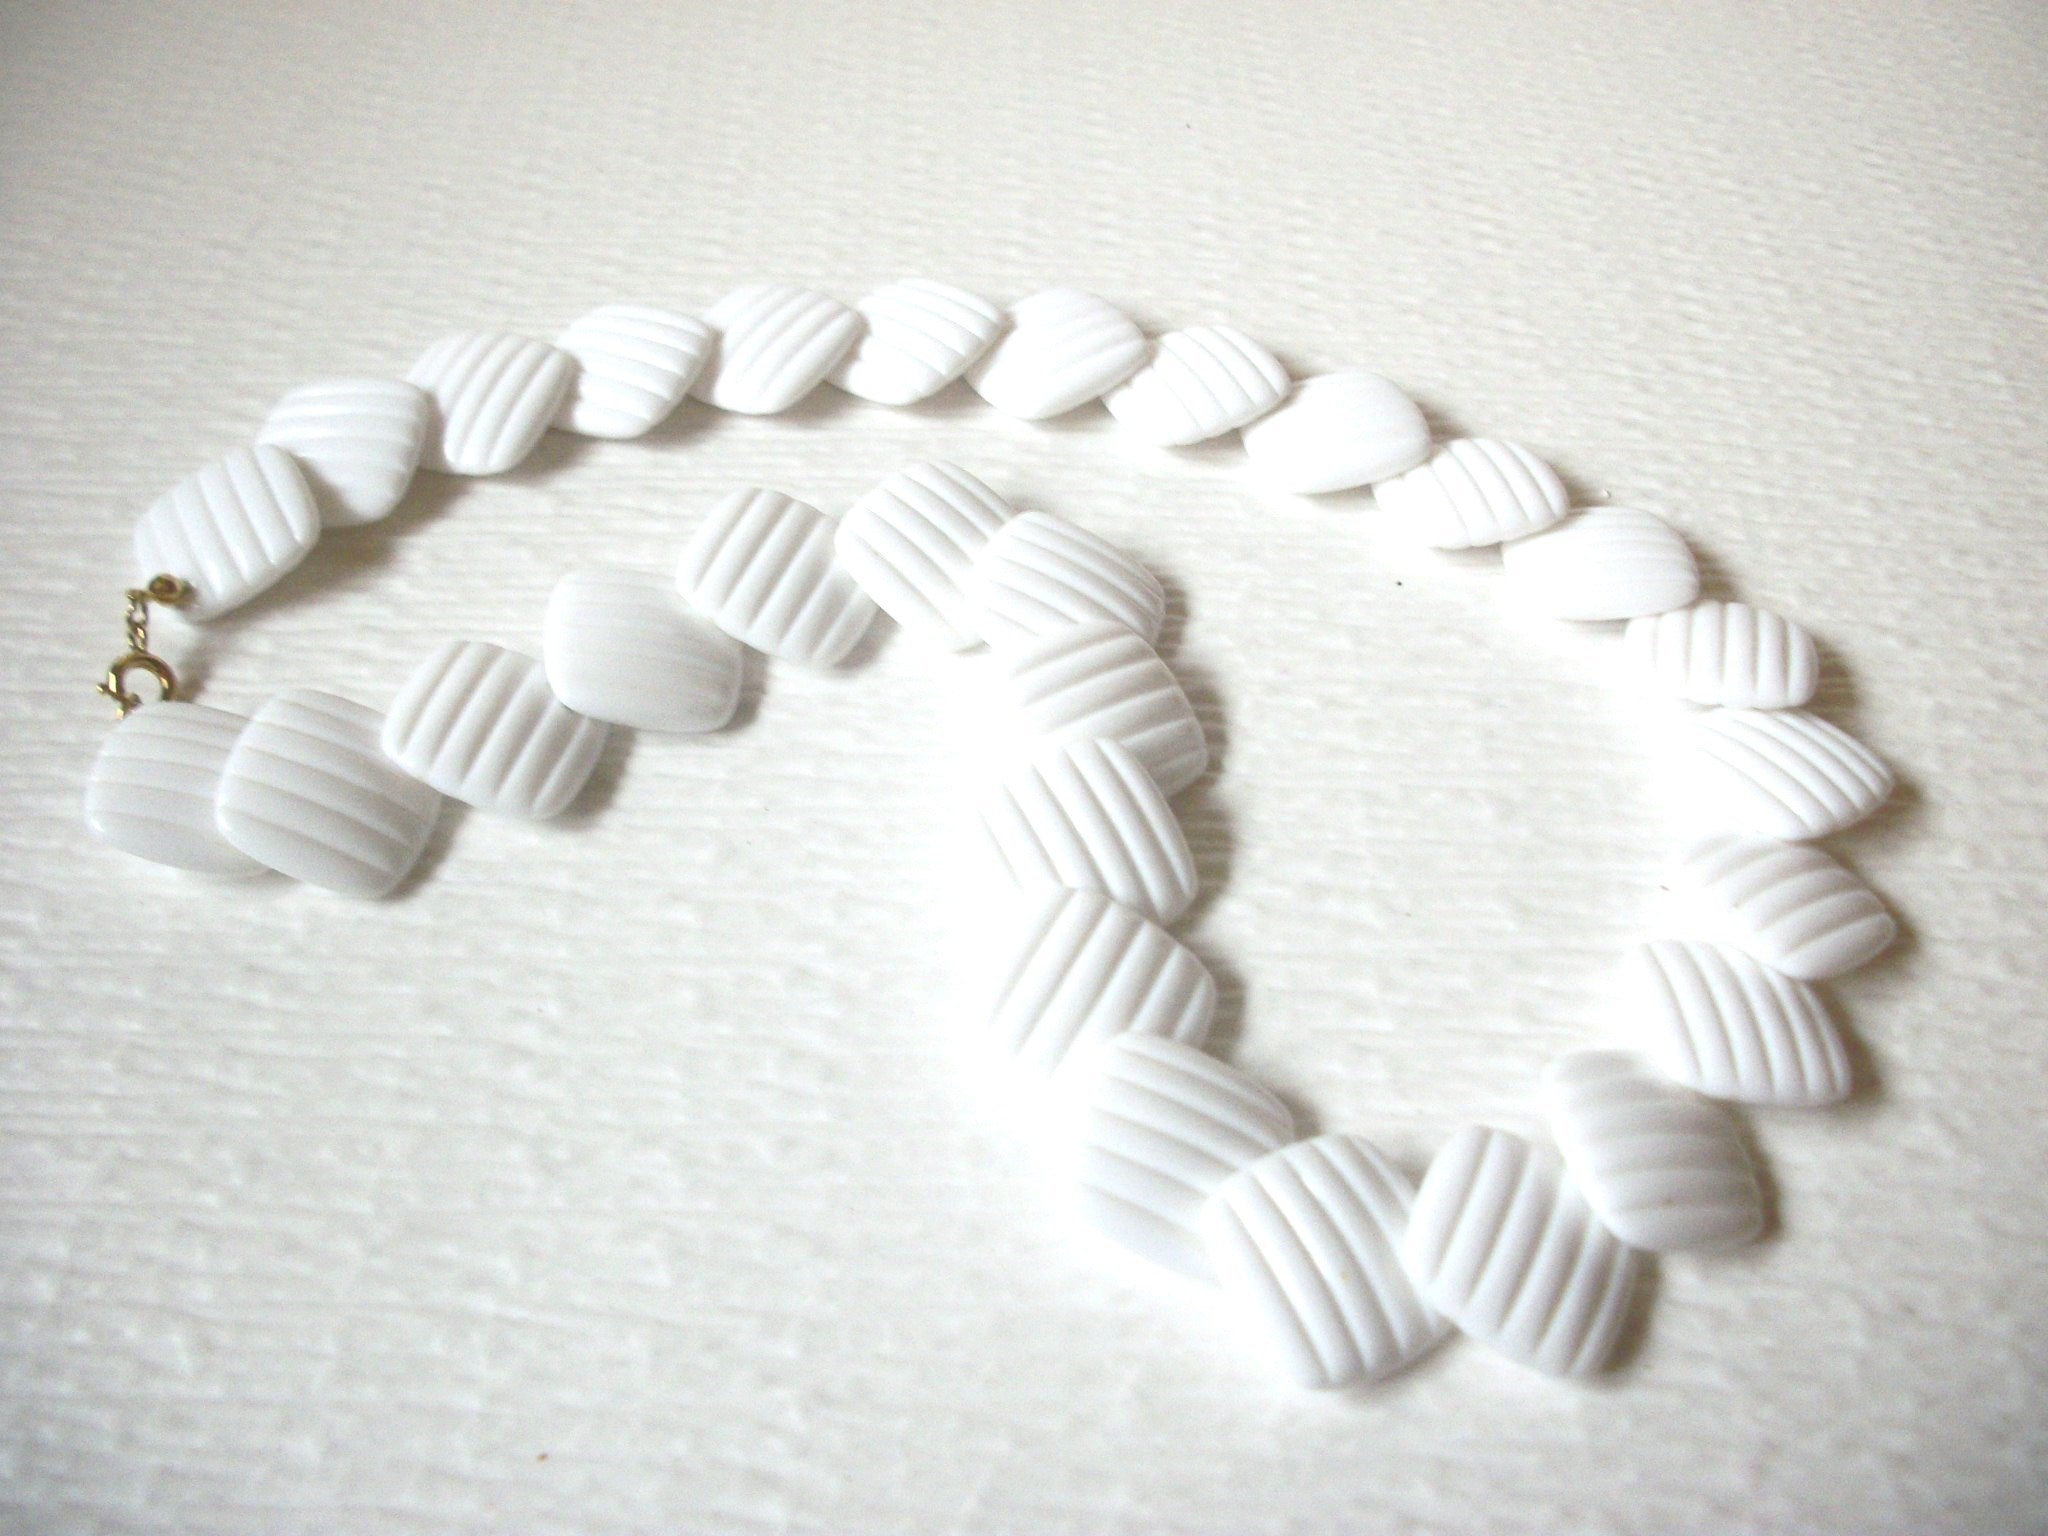 Retro Necklace White Old Plastic, Elegant Shorter Length 18" Long 82016